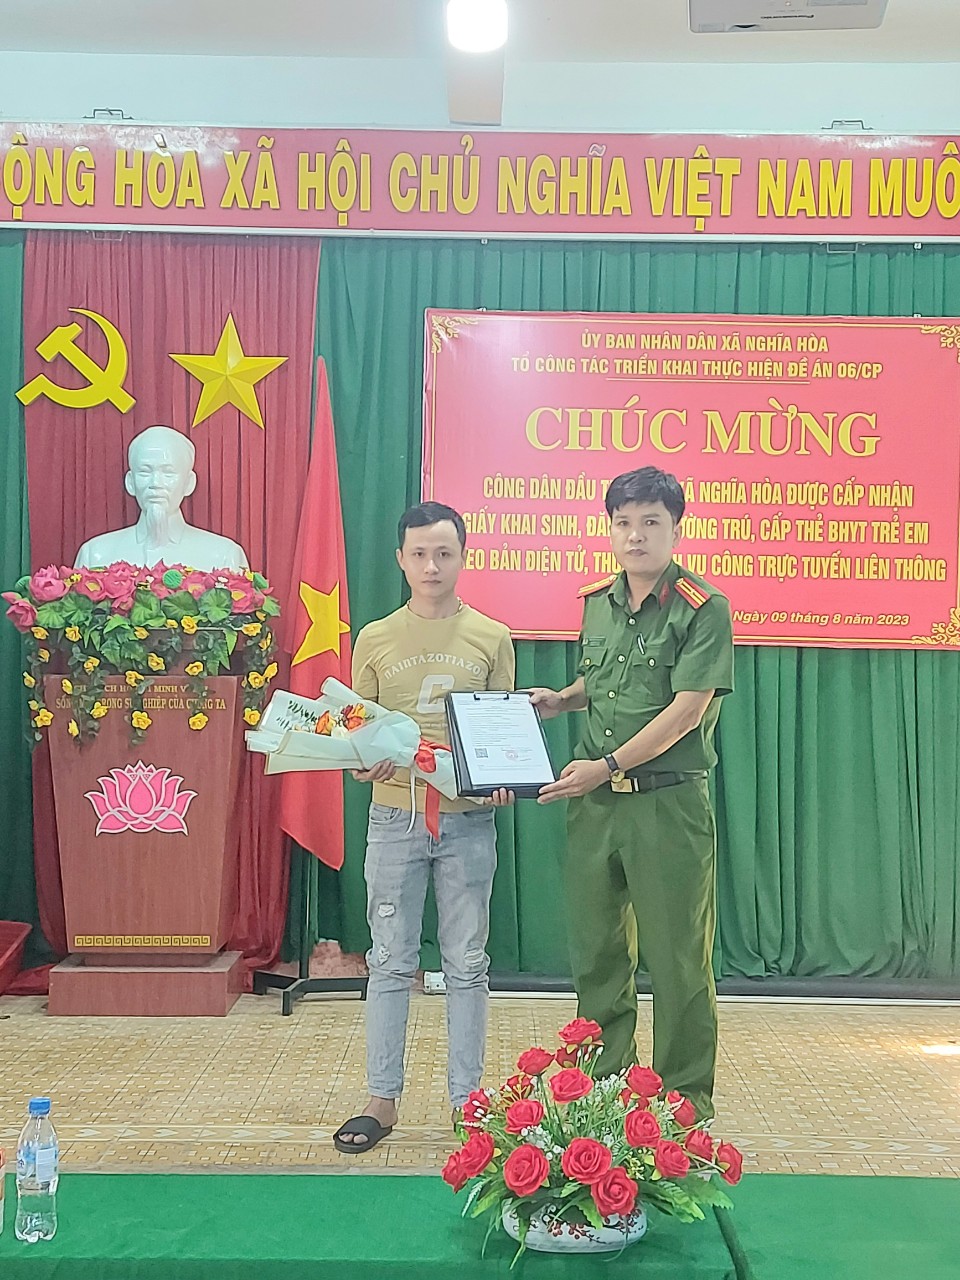 Đ/c Thiếu Tá Nguyễn Văn Trữ - Trưởng công an xã Trao chứng nhận đăng ký thường trú.